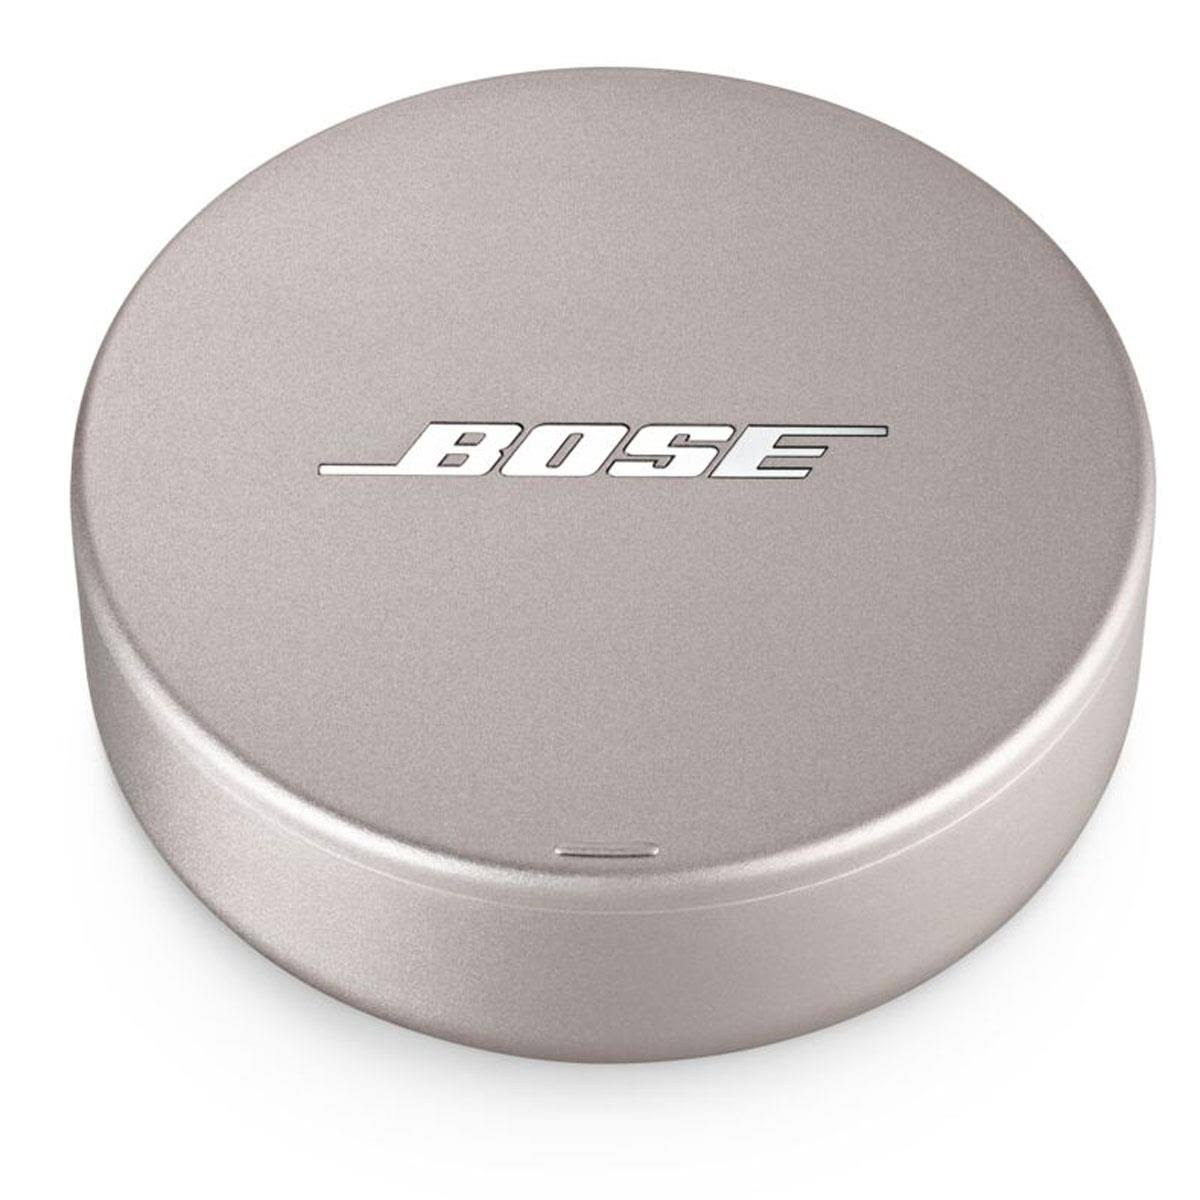 Bose Sleepbuds II